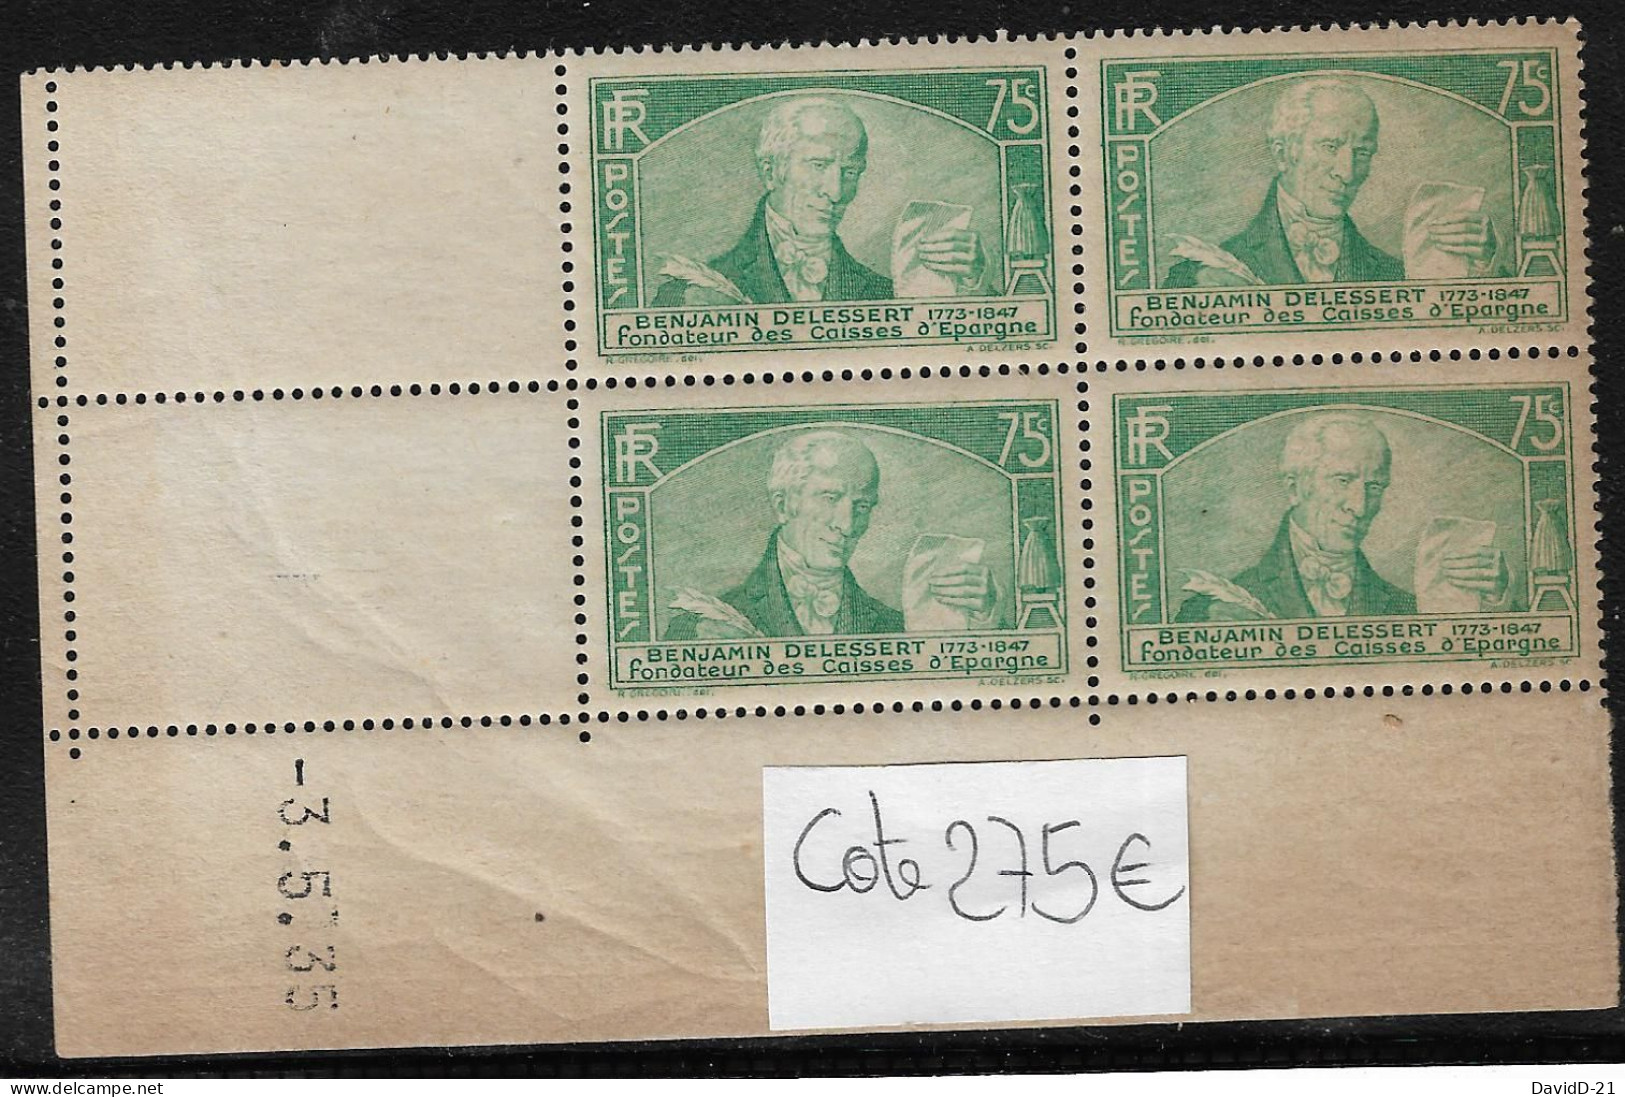 0303. COIN DATE Bloc De 4 Timbres - Date : 3 Mai 1935 - N°303 " Benjamin Delessert "- NEUF Gomme D'origine - Côte 300eu. - 1930-1939